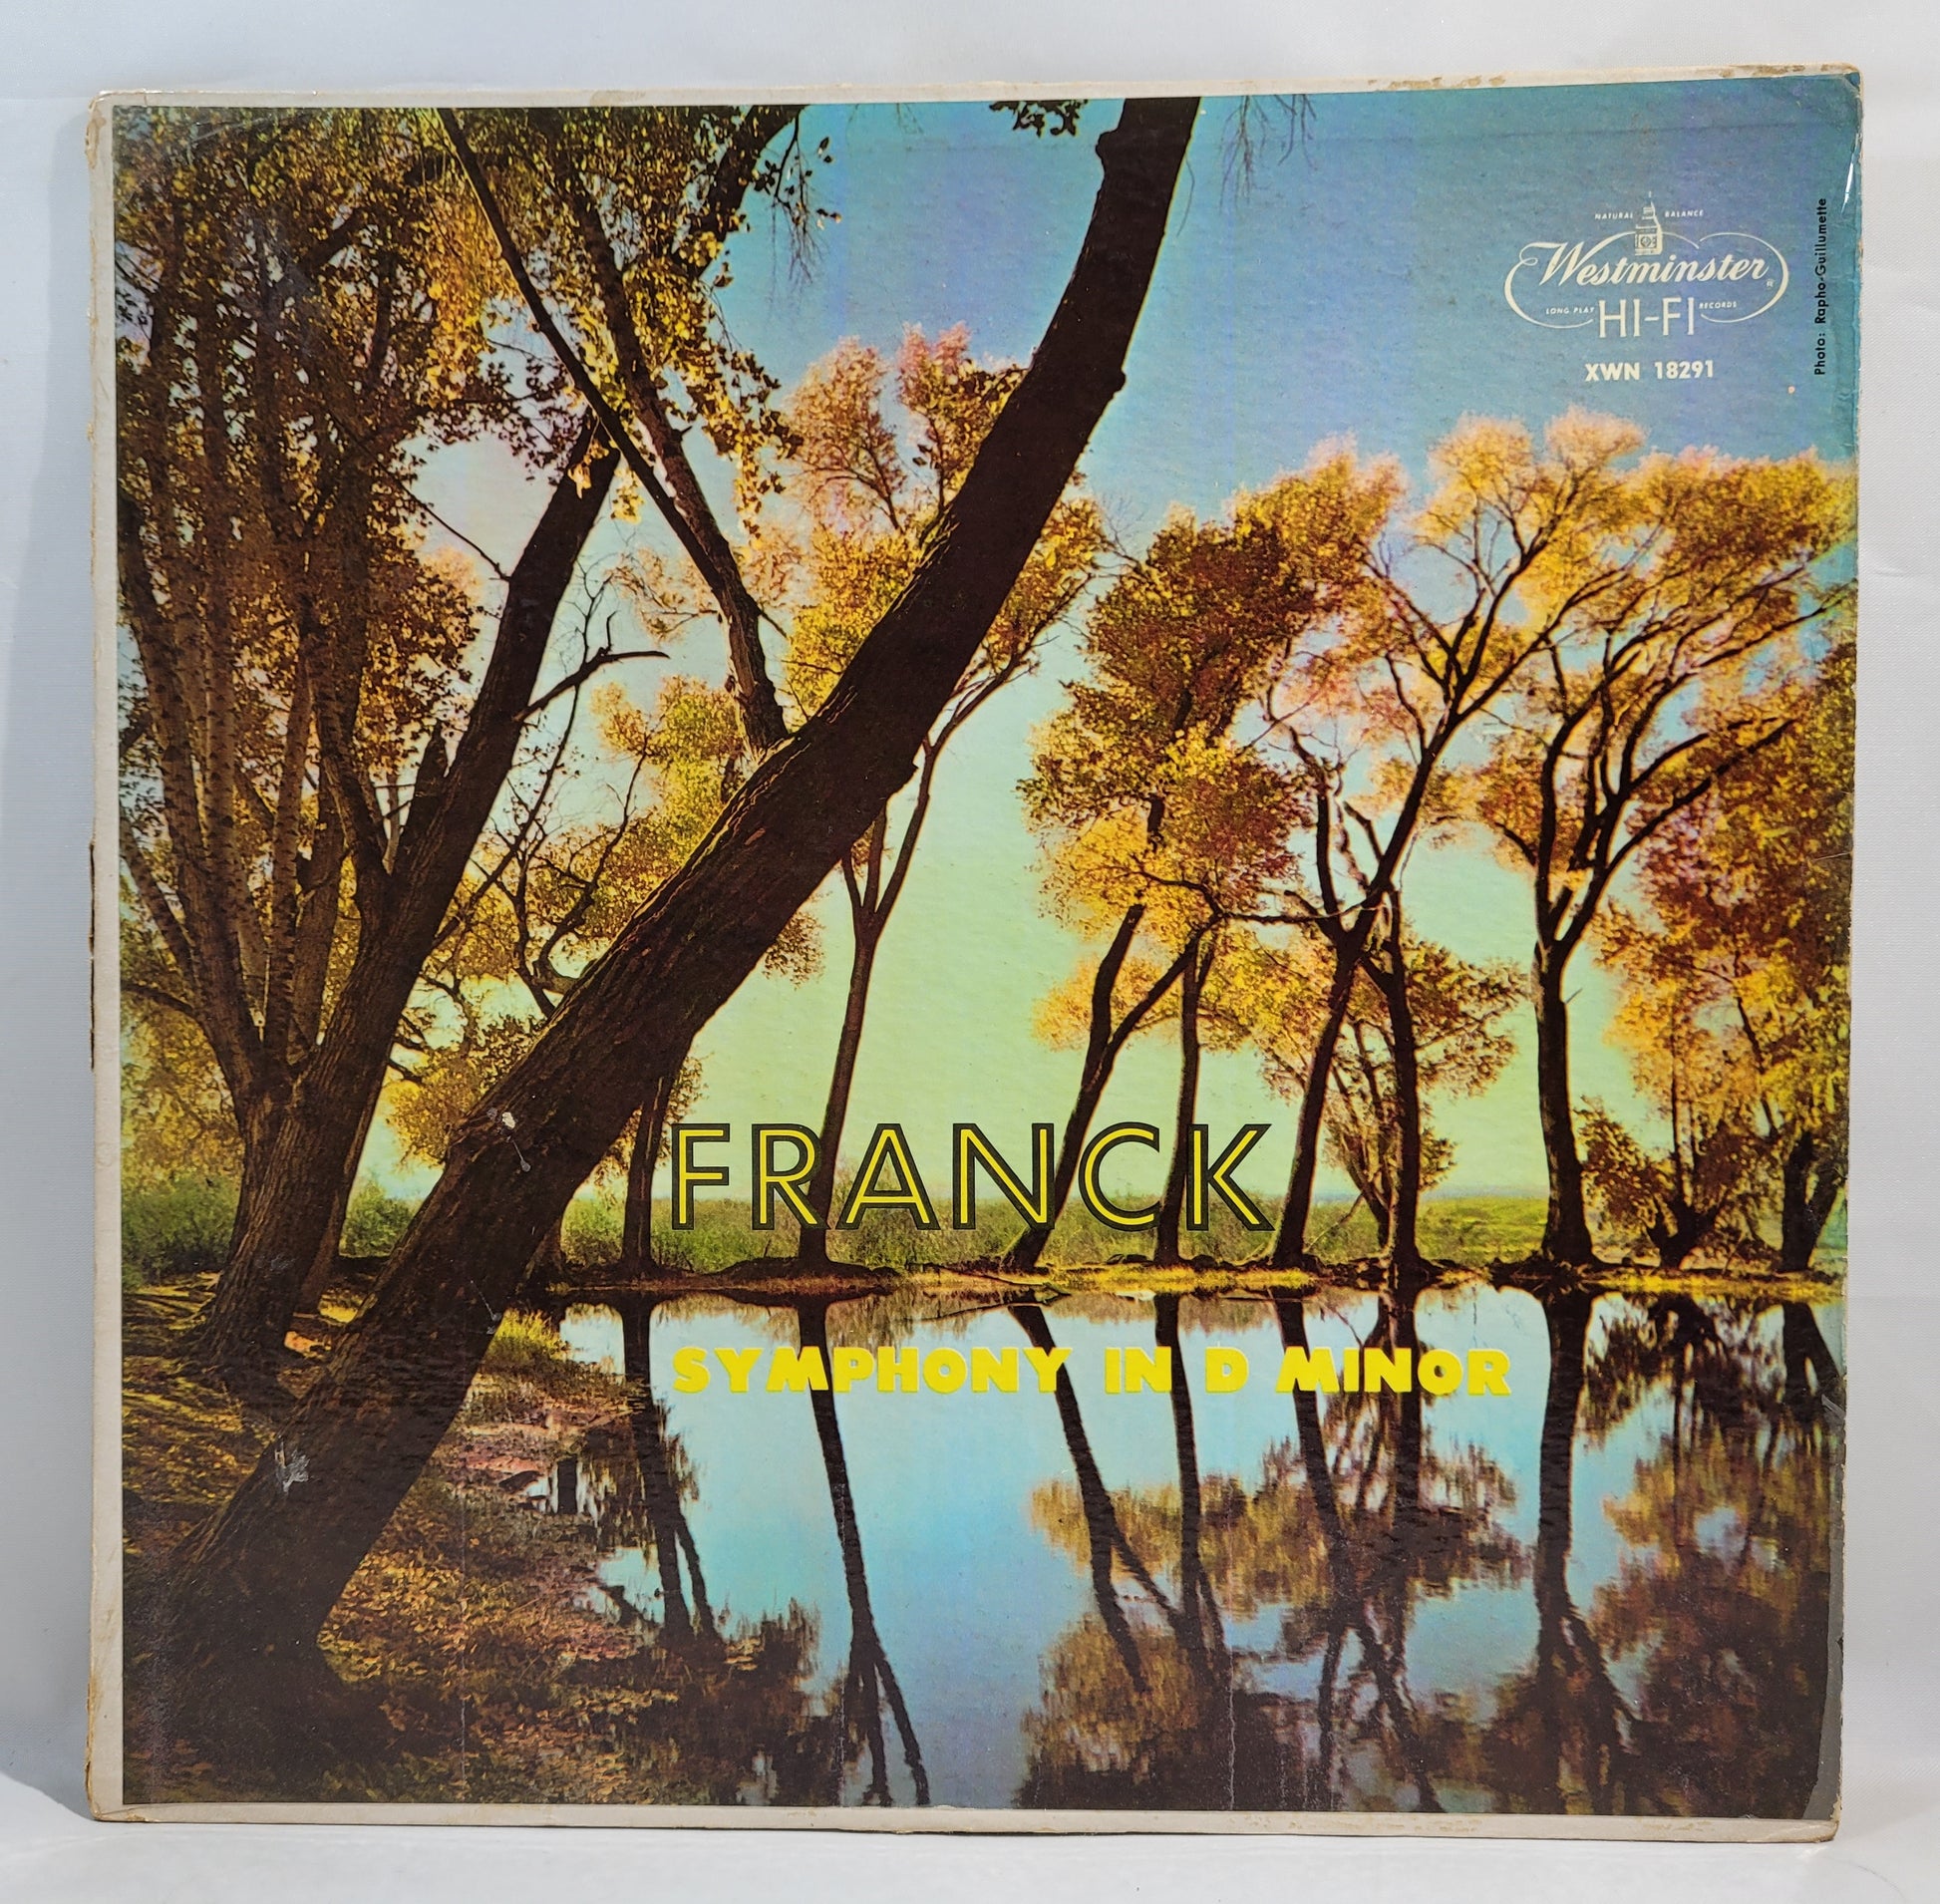 César Franck - Symphony in D Minor [Vinyl Record LP]